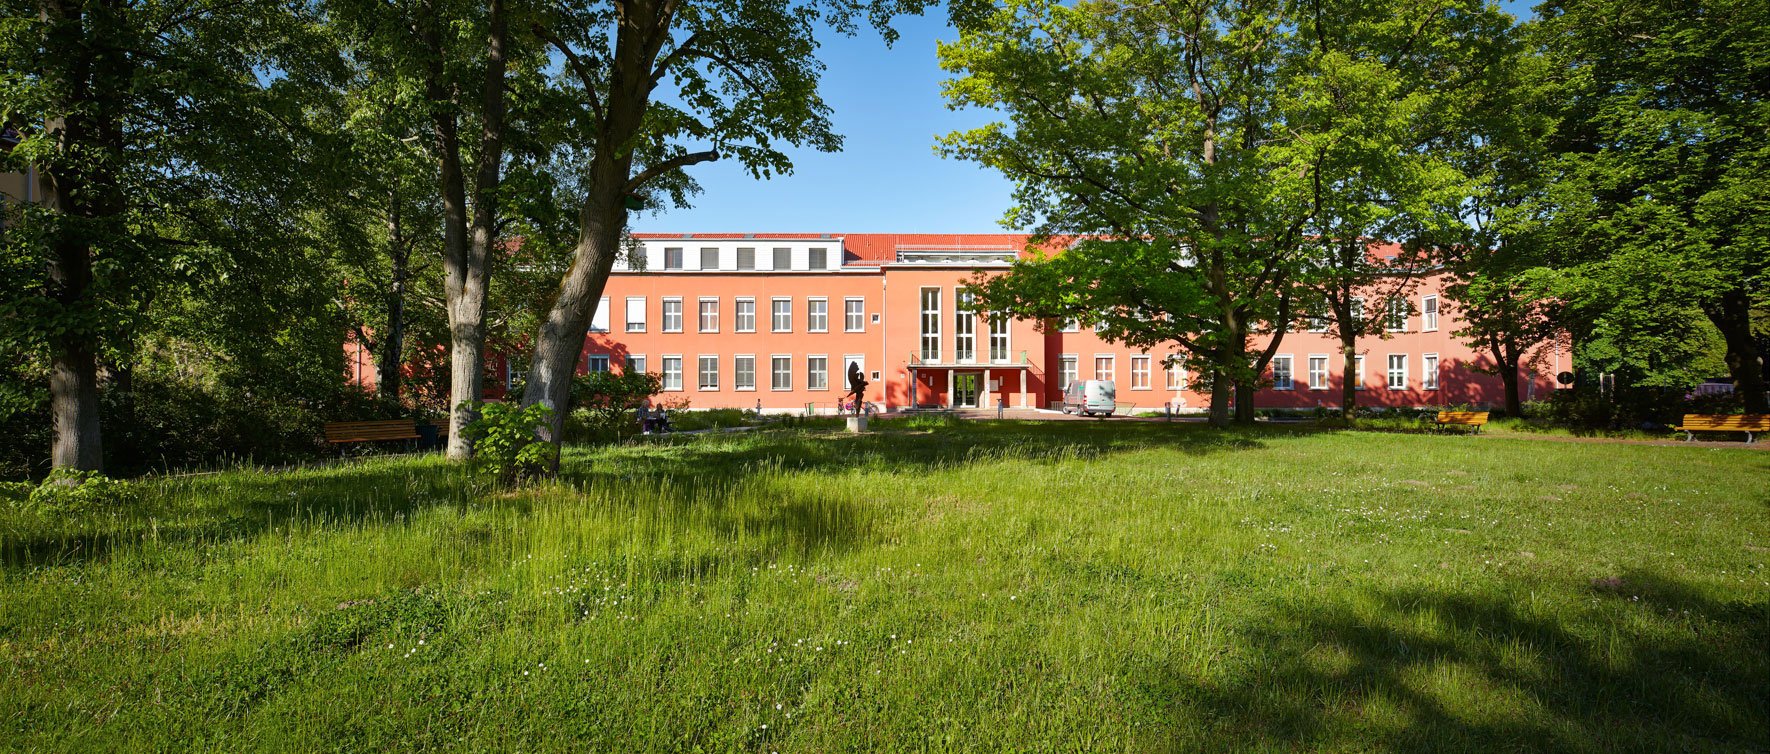 Rotes Hauptgebäude des Gemeinschaftskrankenhauses Havelhöhe umgeben von üppigen Grünflächen